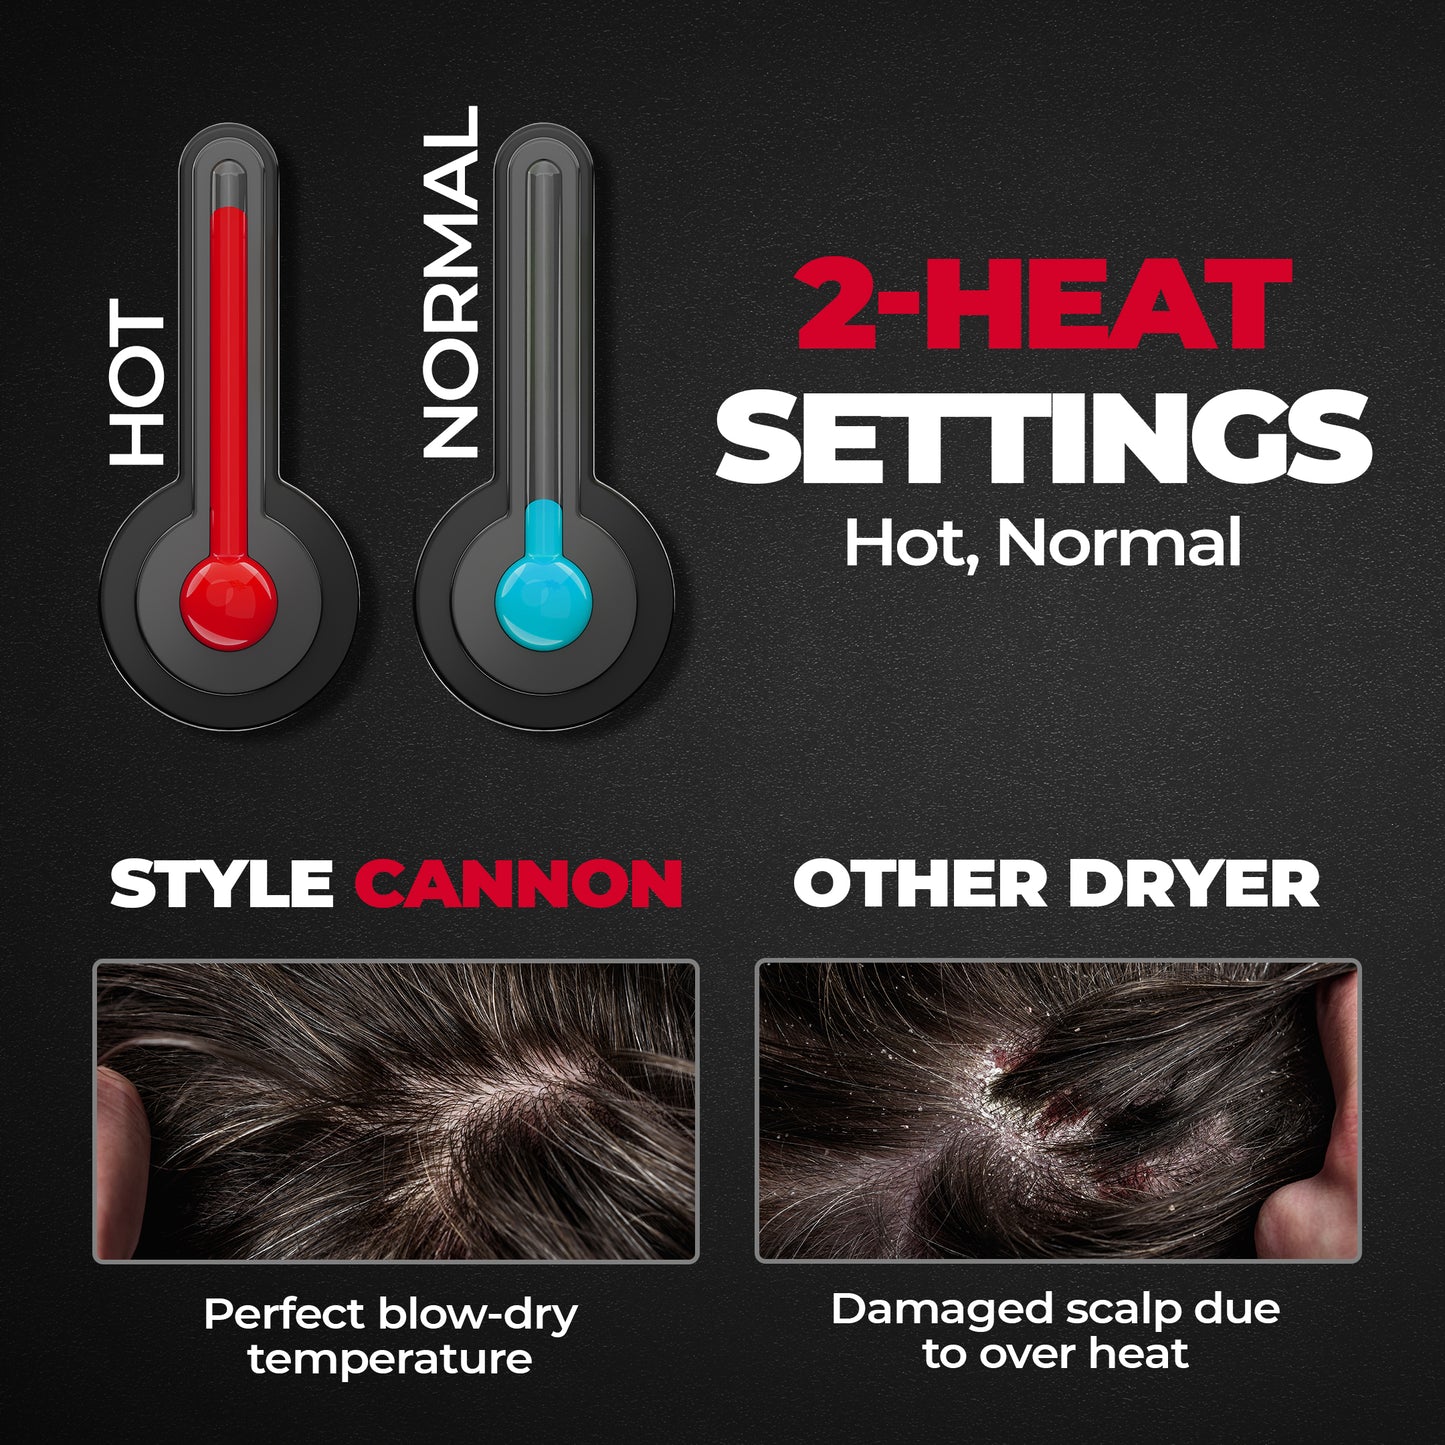 Beardo Style Cannon Ultracompact Hair Dryer